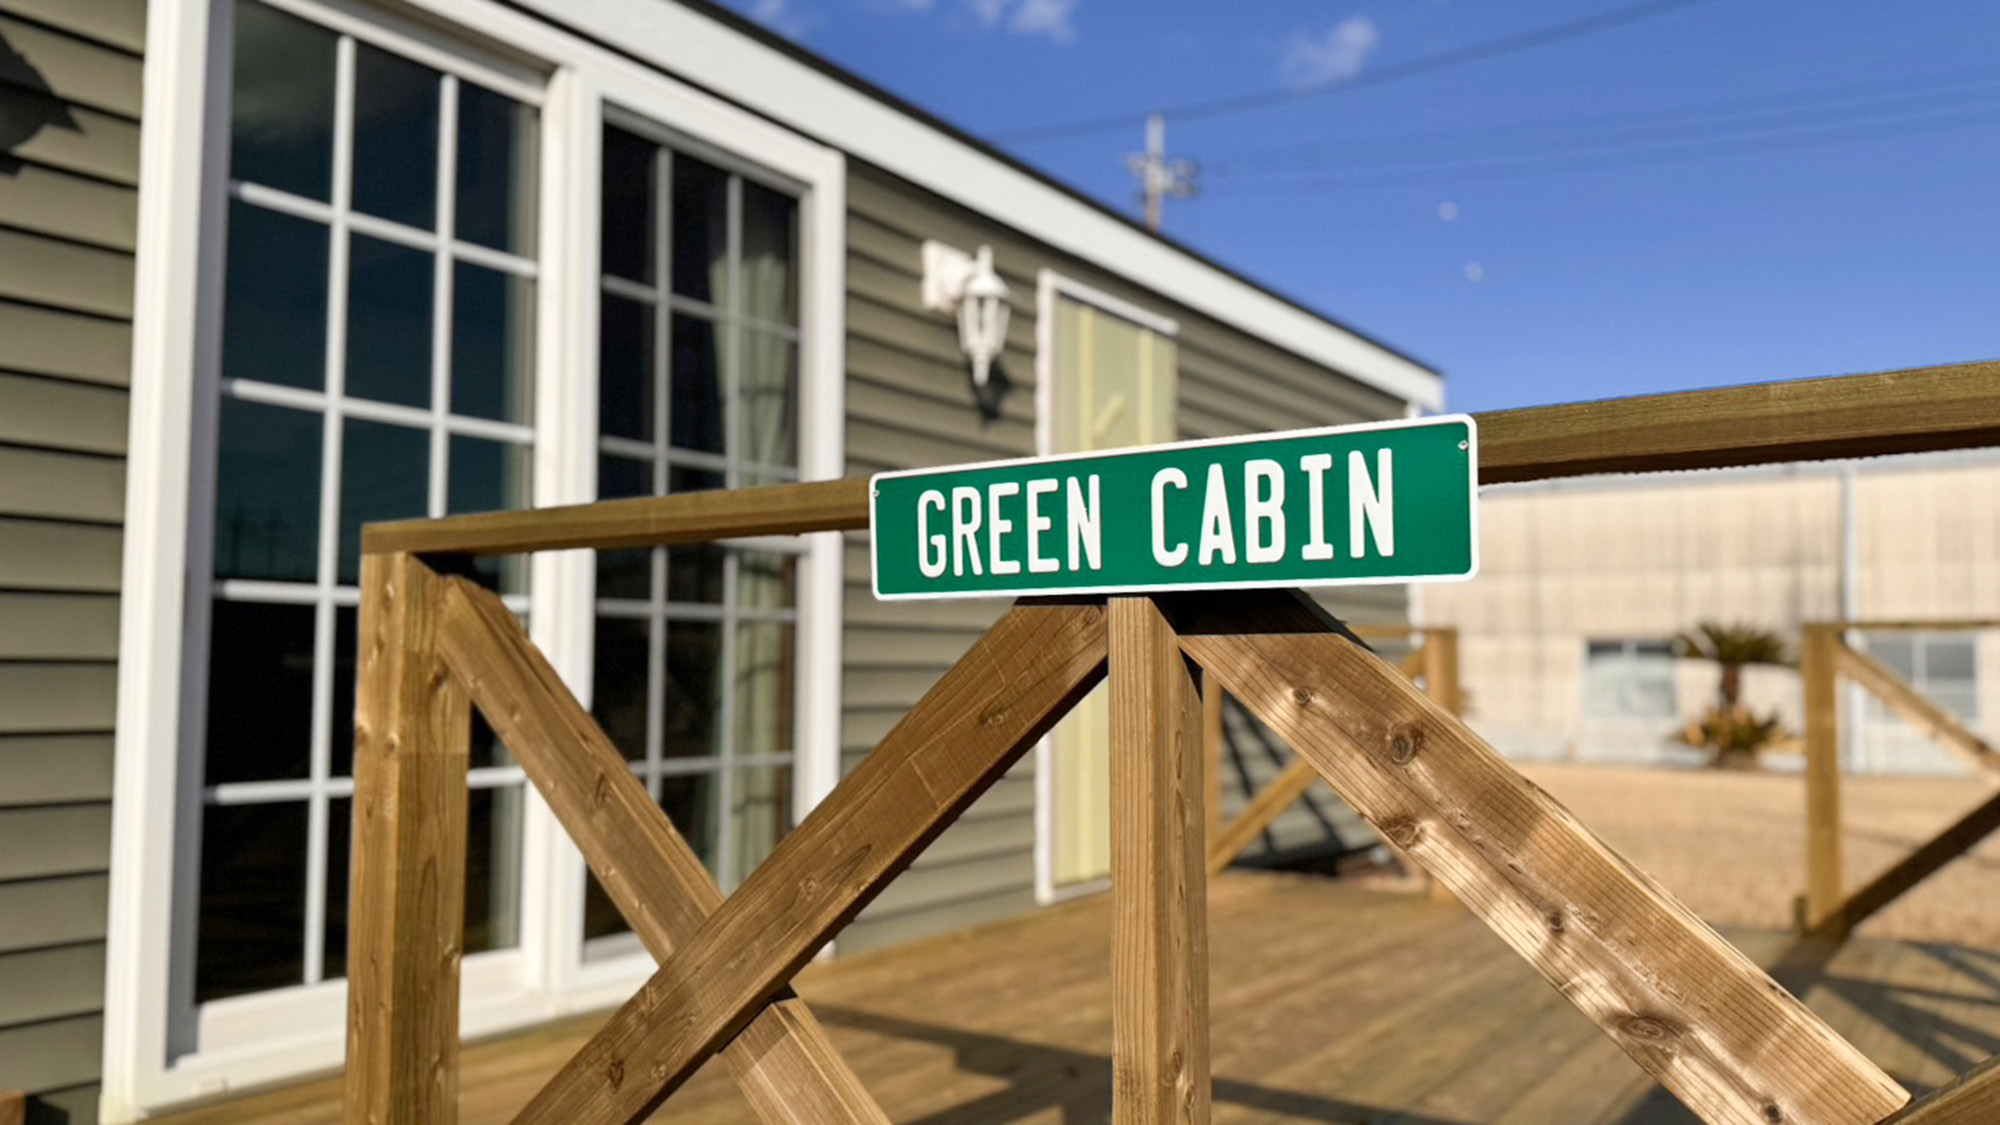 ・【GREEN Cabin】緑のルームサインを目印にお越しください